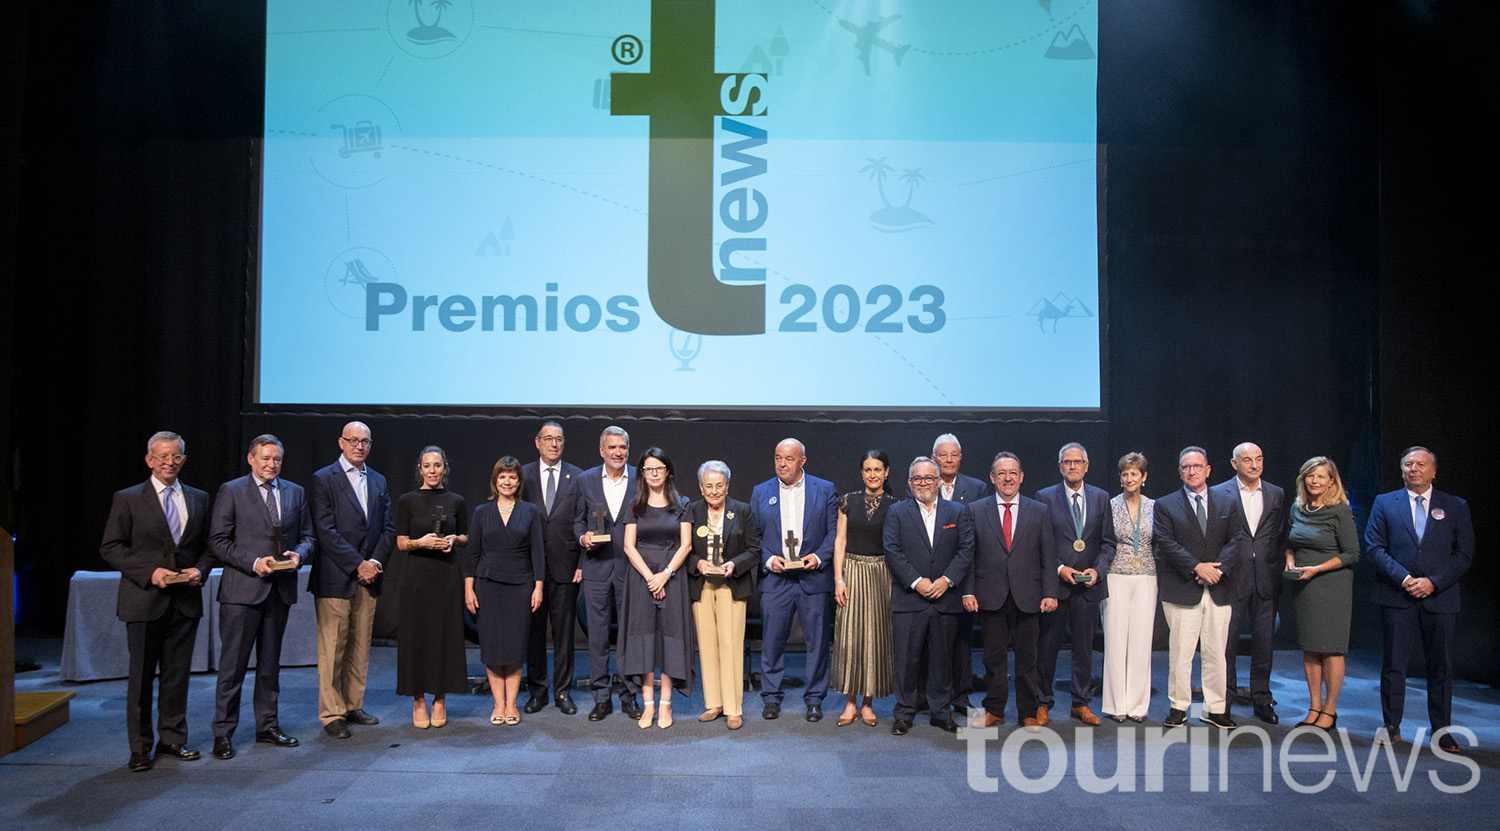  Foto de familia de los premios Tourinews con miembros del jurado, premiados y homenajeados.